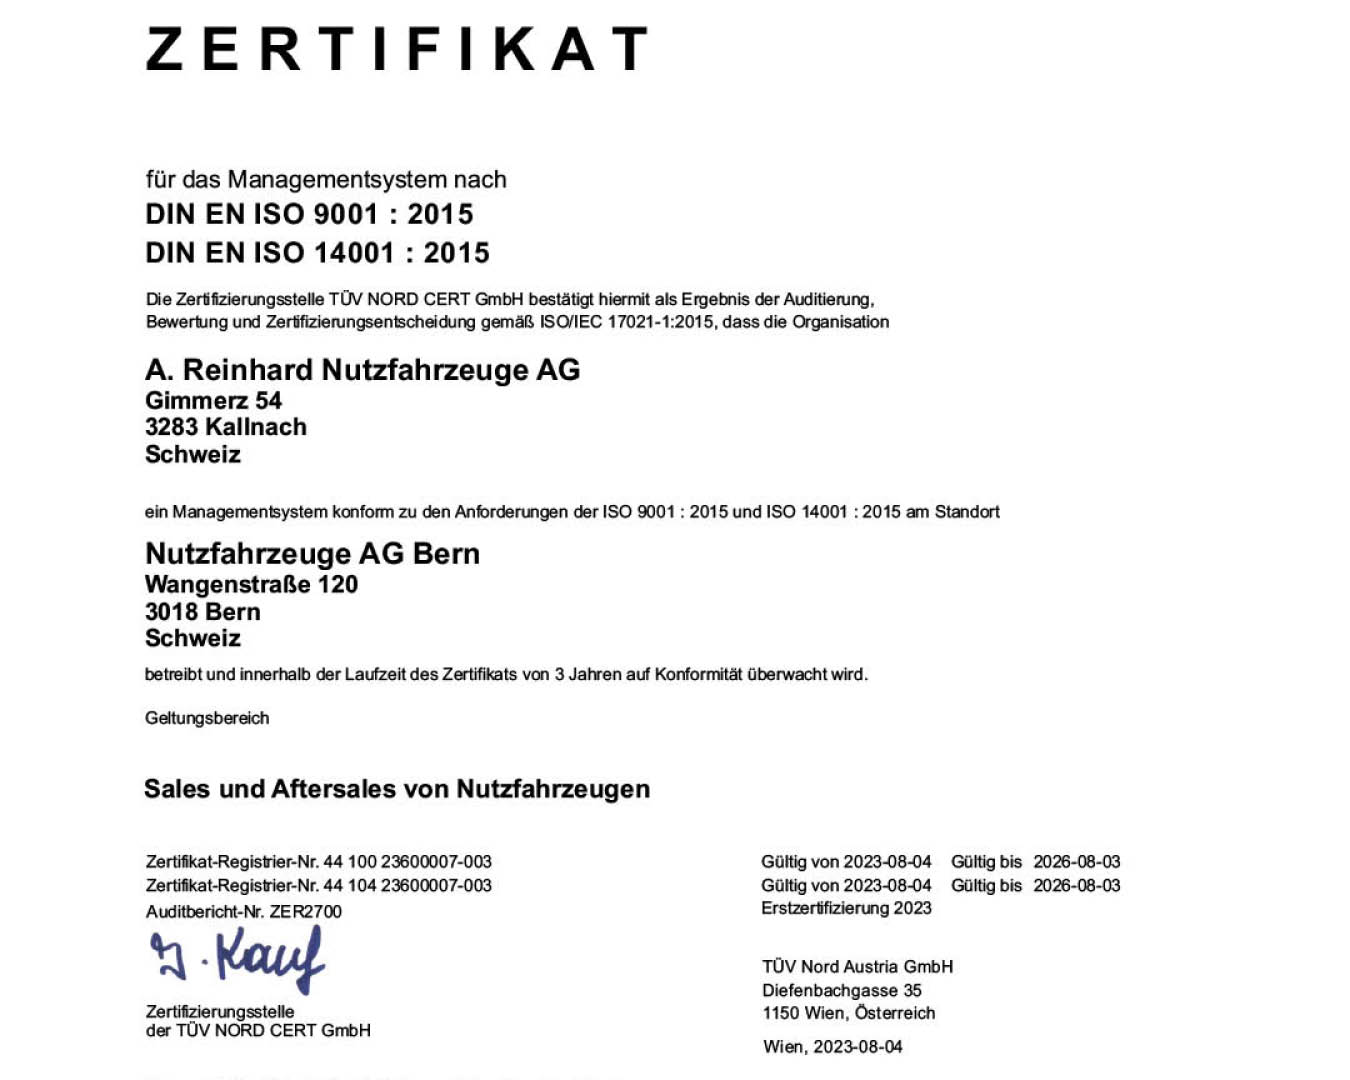 Vorschaubild der ISO Zertifikate der Nutzfahrzeuge AG Bern.